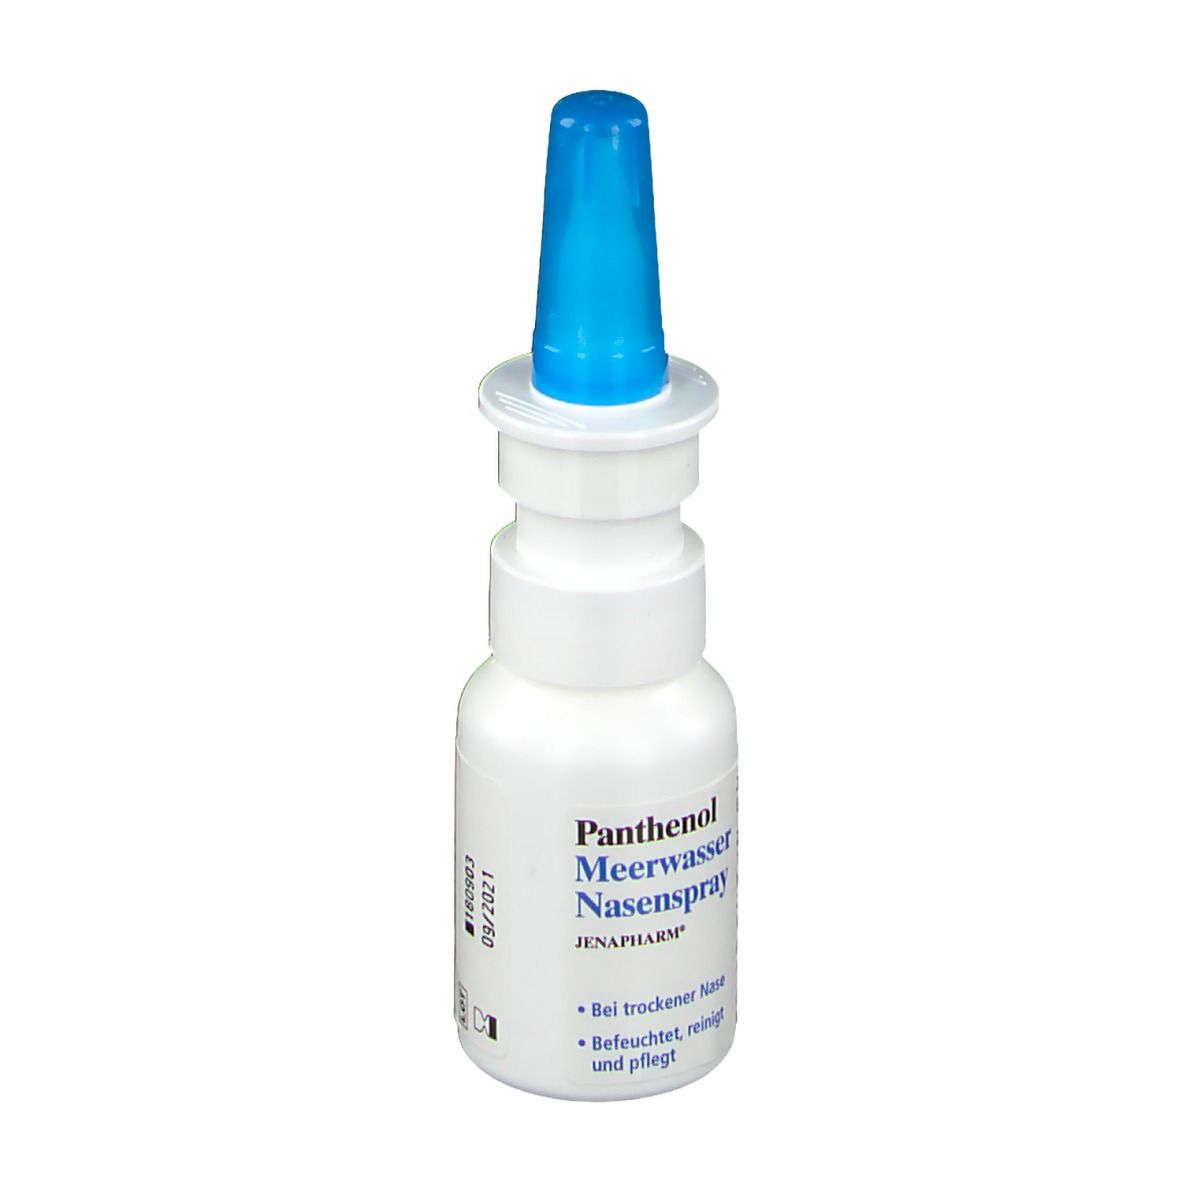 Panthenol Meerwasser-Nasenspray JENAPHARM®